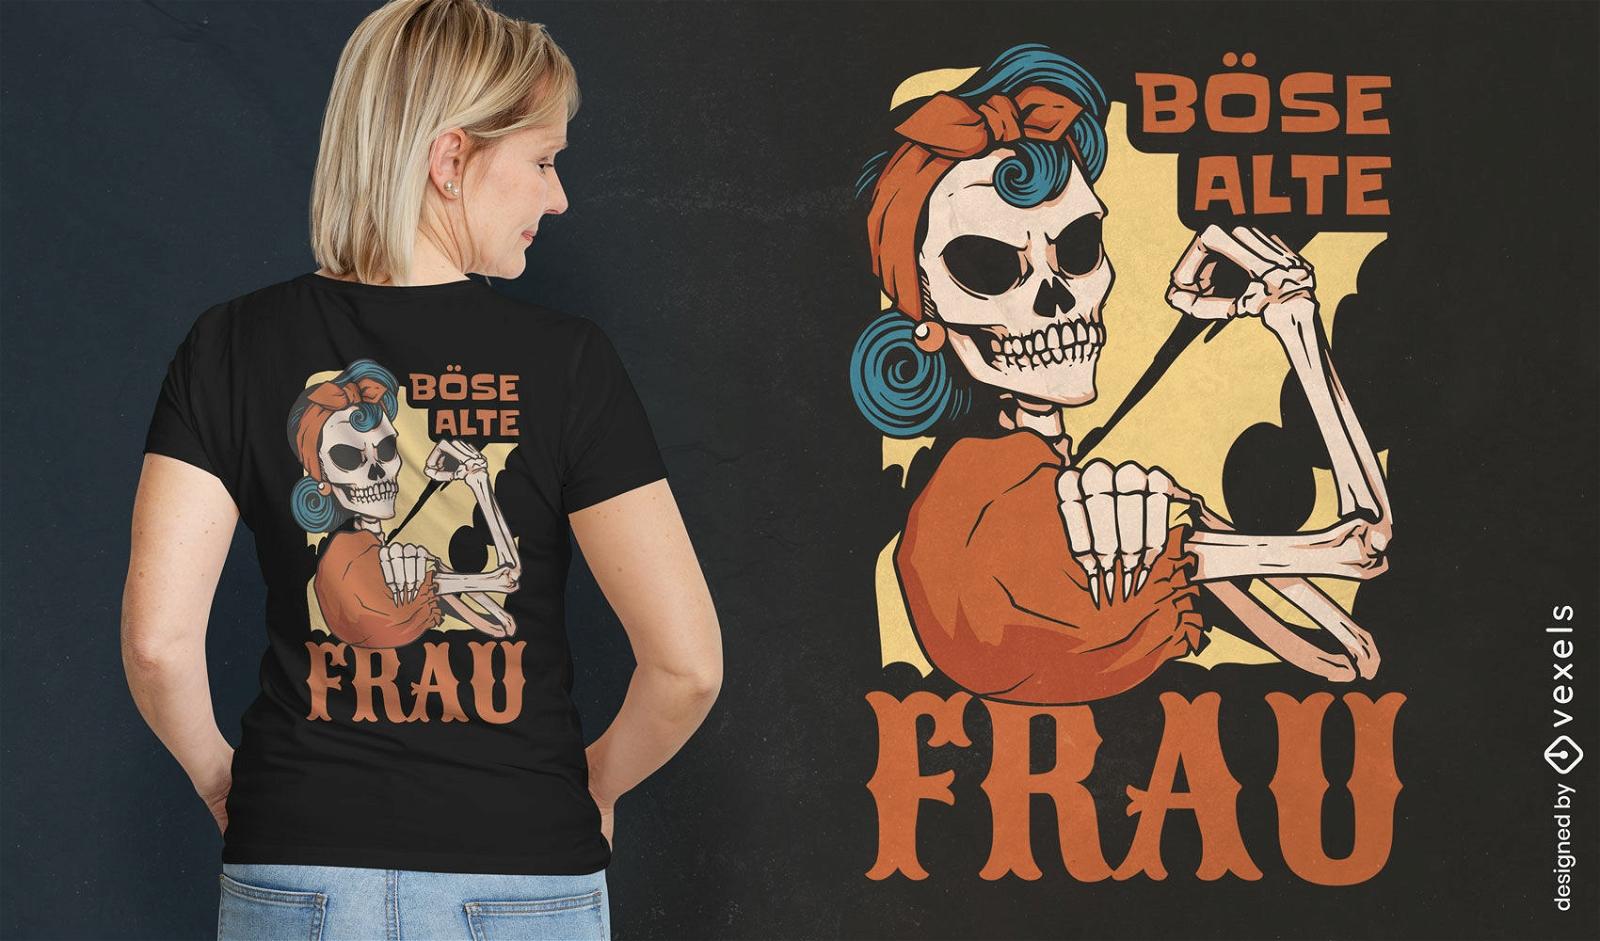 Schlechtes Skelett-T-Shirt-Design der alten Frau